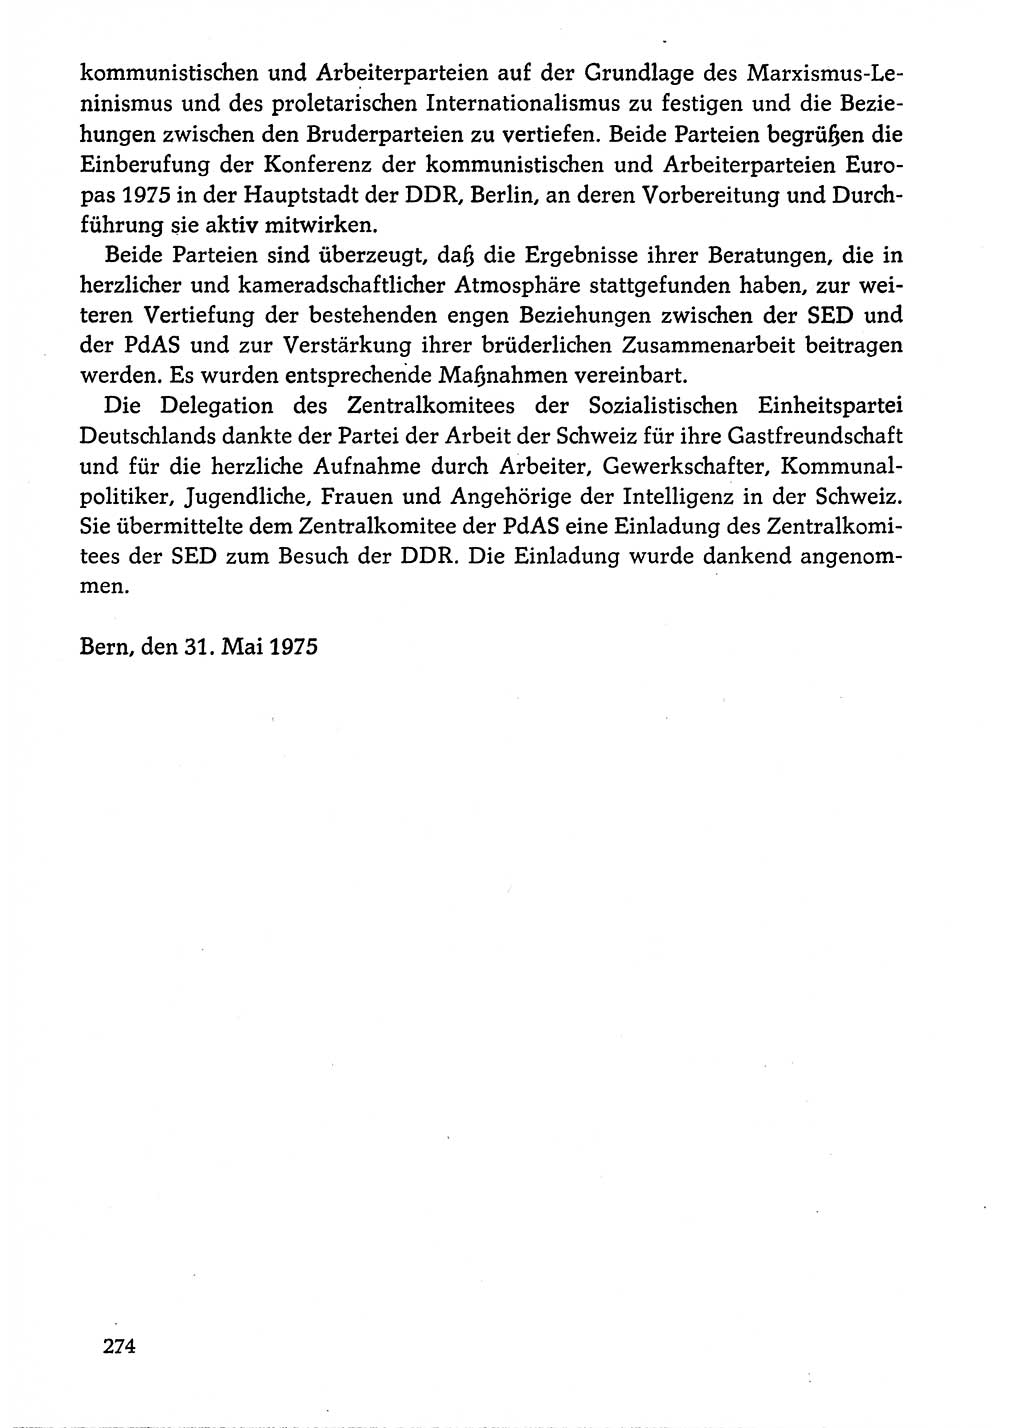 Dokumente der Sozialistischen Einheitspartei Deutschlands (SED) [Deutsche Demokratische Republik (DDR)] 1974-1975, Seite 274 (Dok. SED DDR 1978, Bd. ⅩⅤ, S. 274)